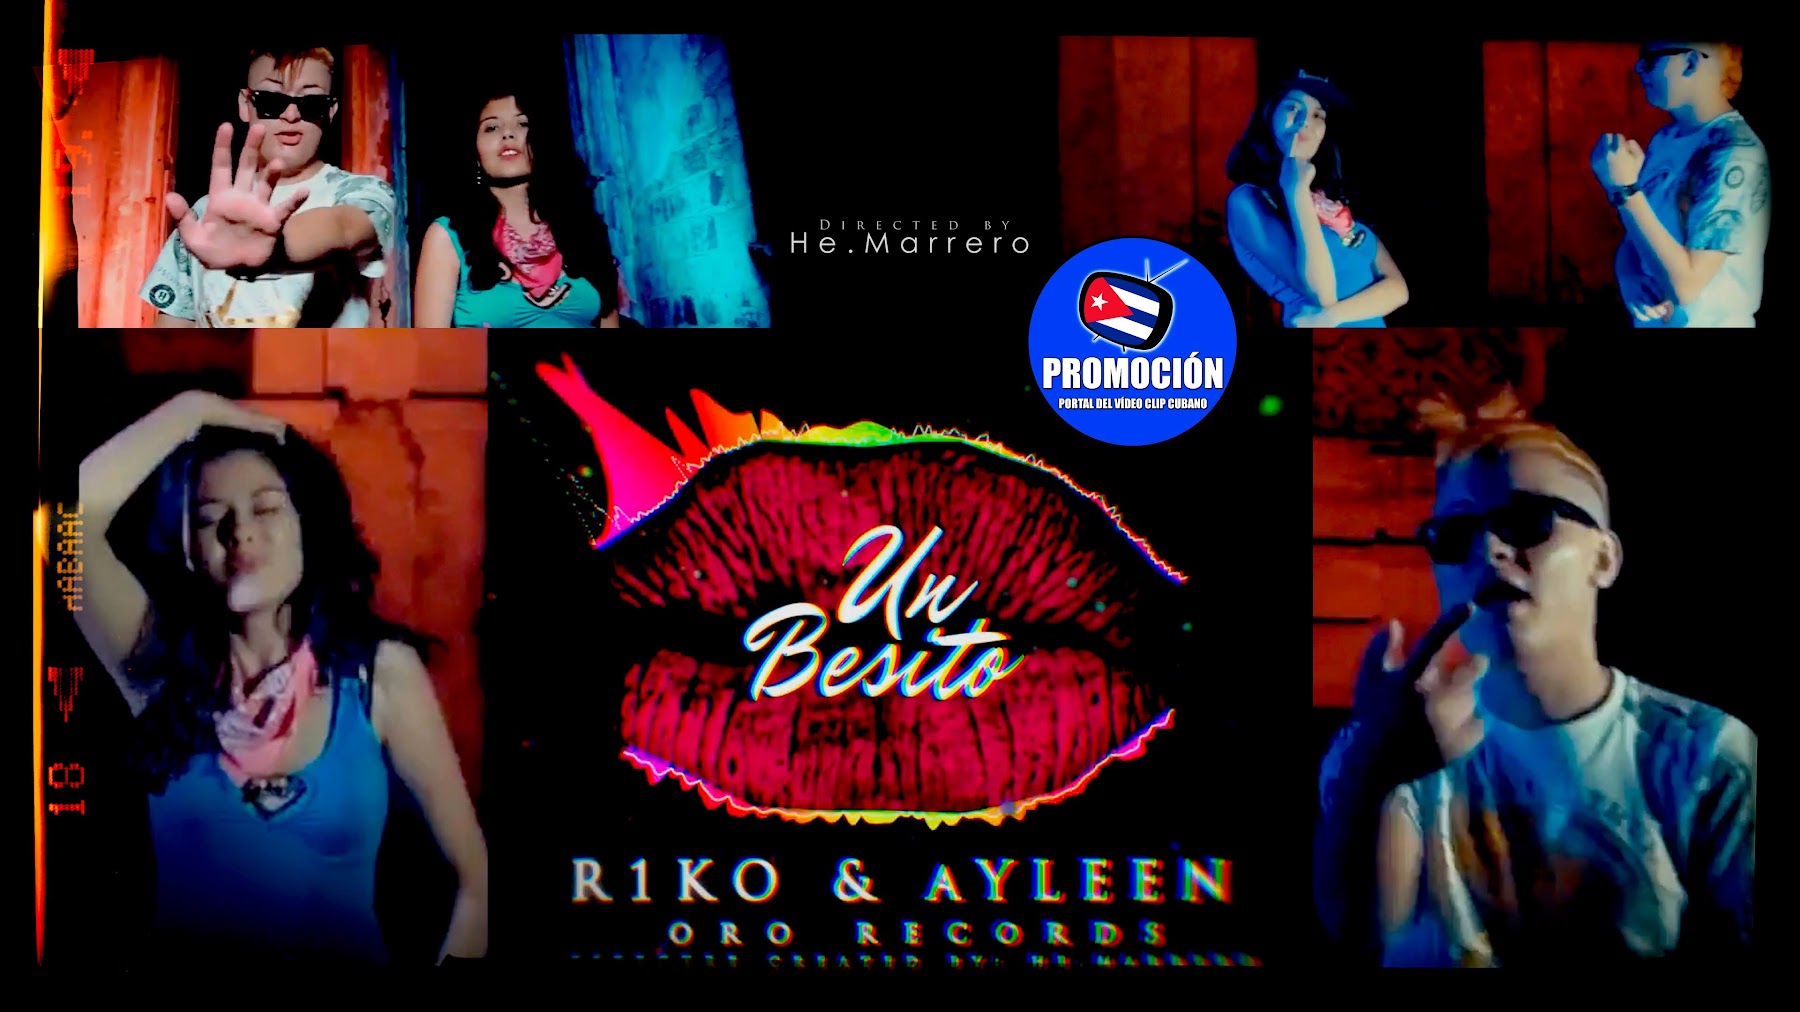 R1ko & Ayleen - ¨Un Besito¨ - Videoclip - Director: He. Marrero. Portal Del Vídeo Clip Cubano. Música urbana cubana. Reguetón. Cuba.